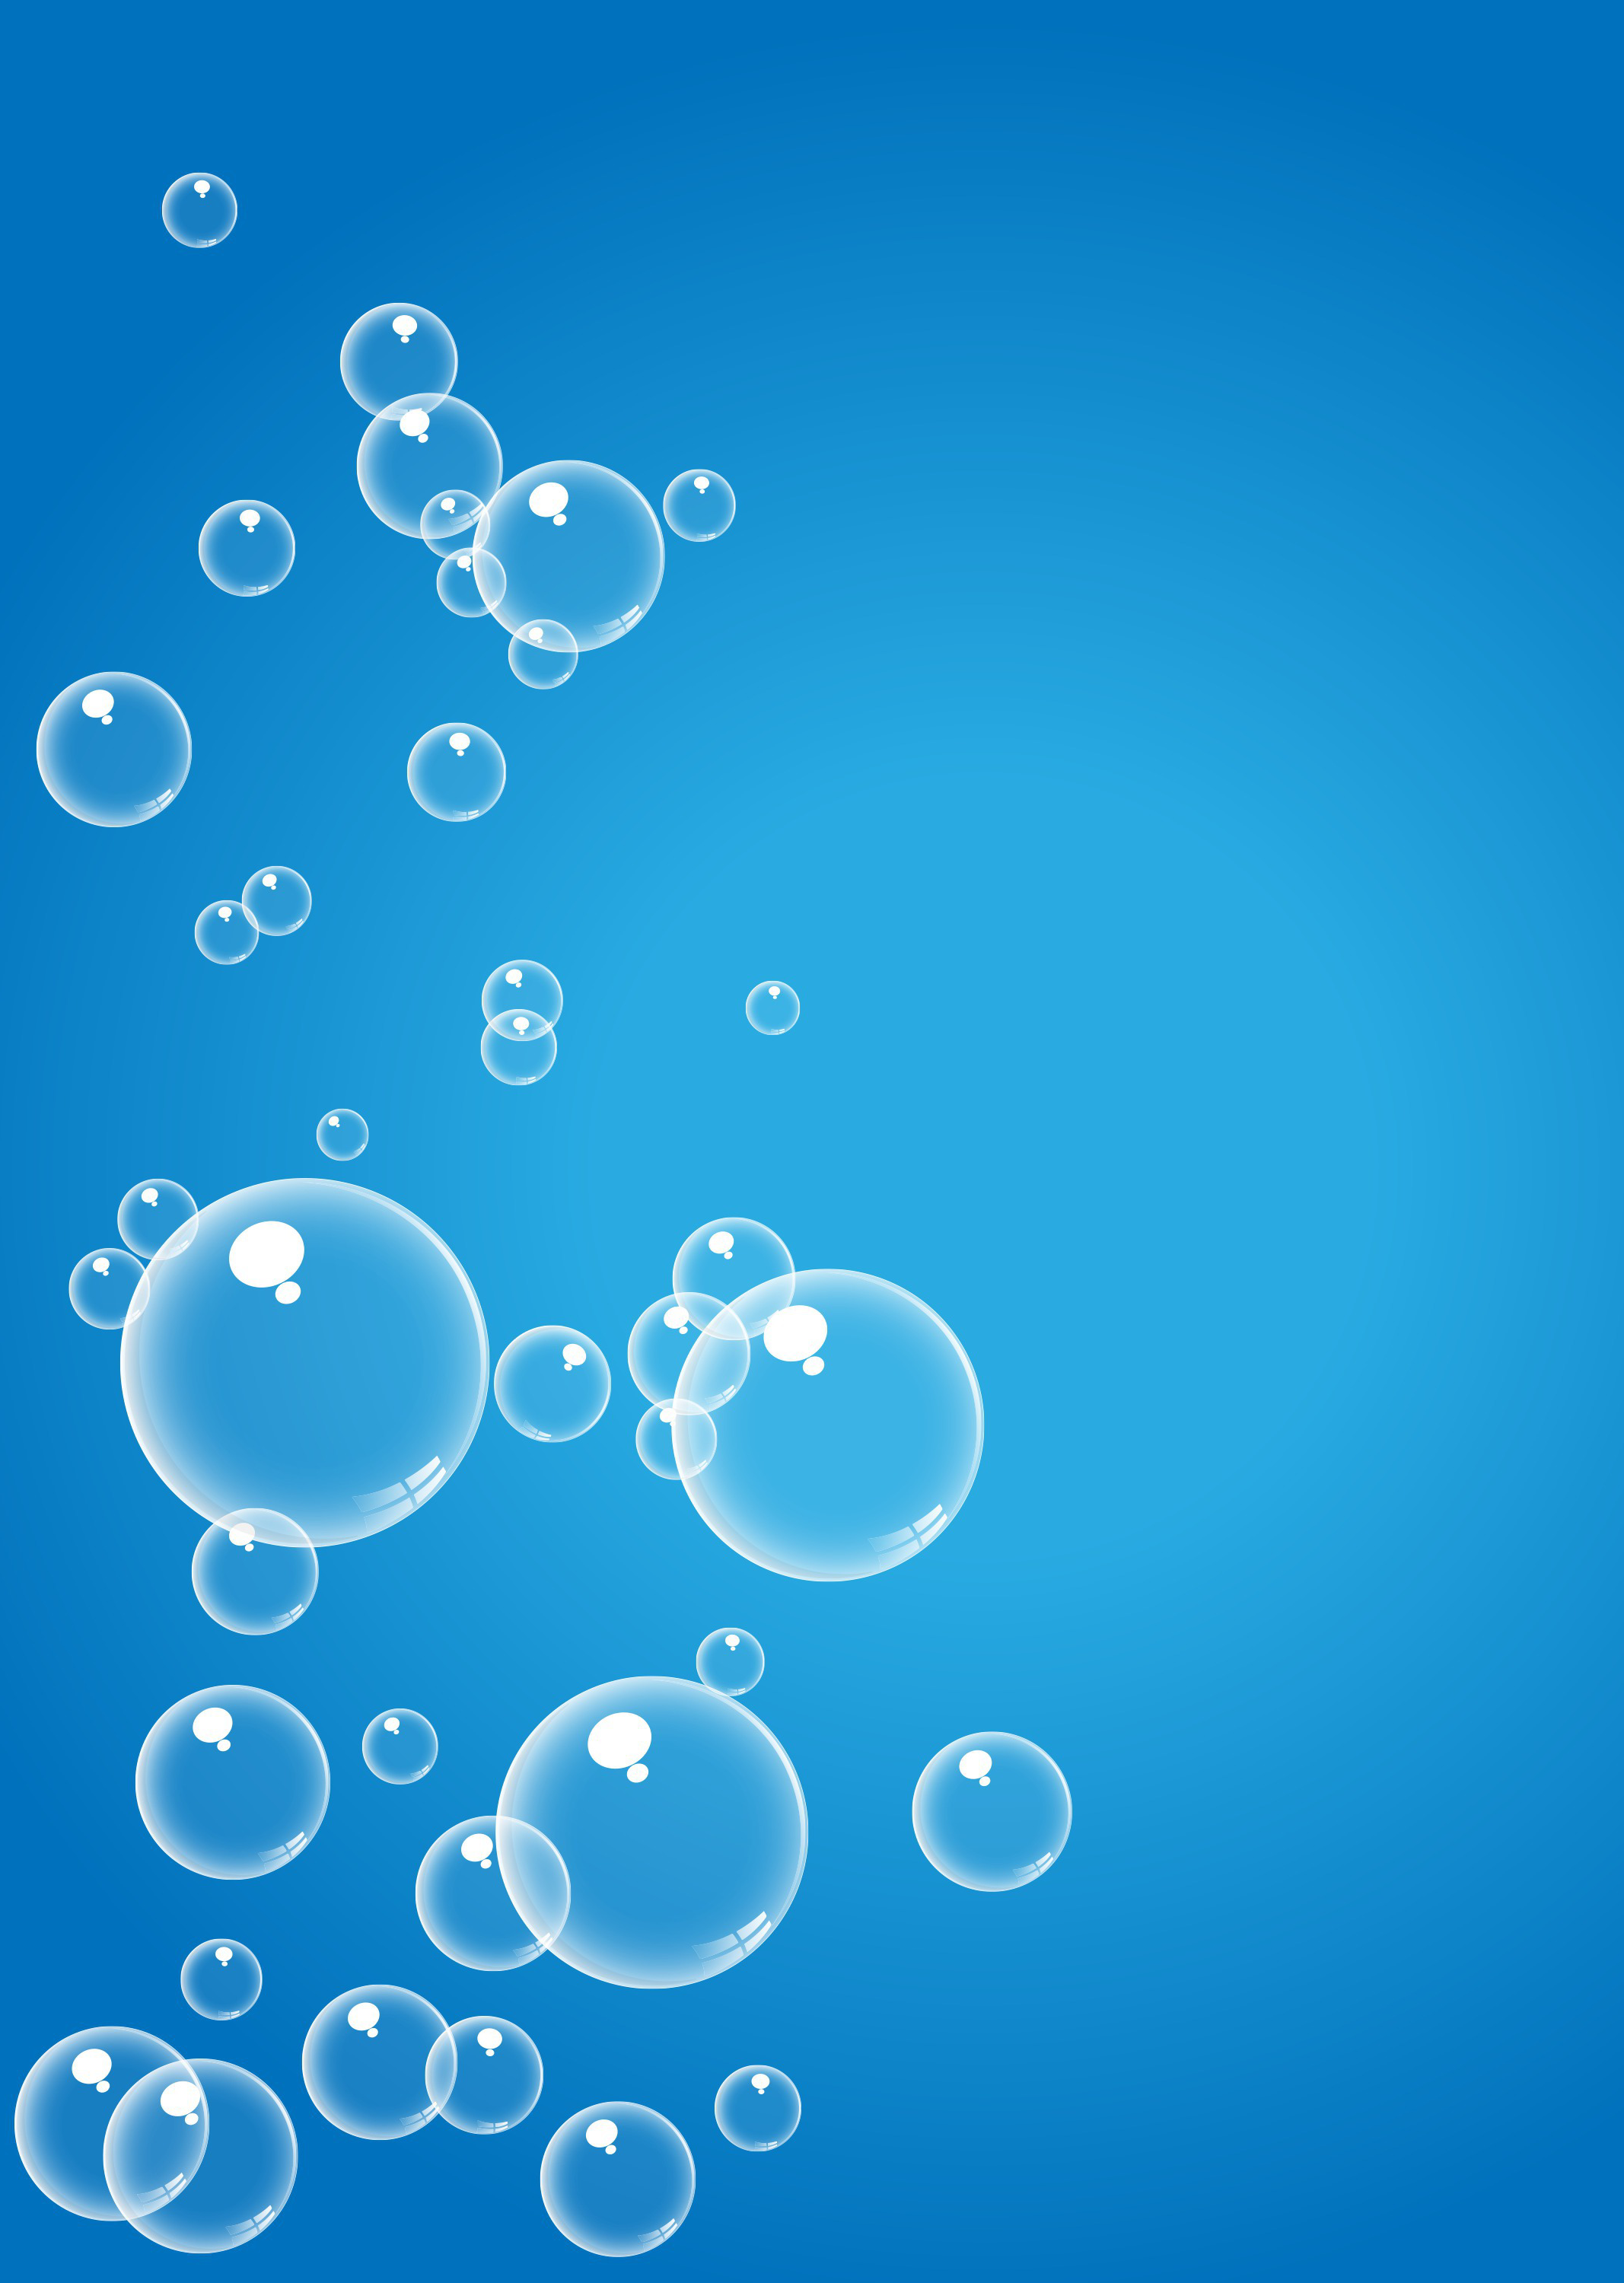 Bubble Free